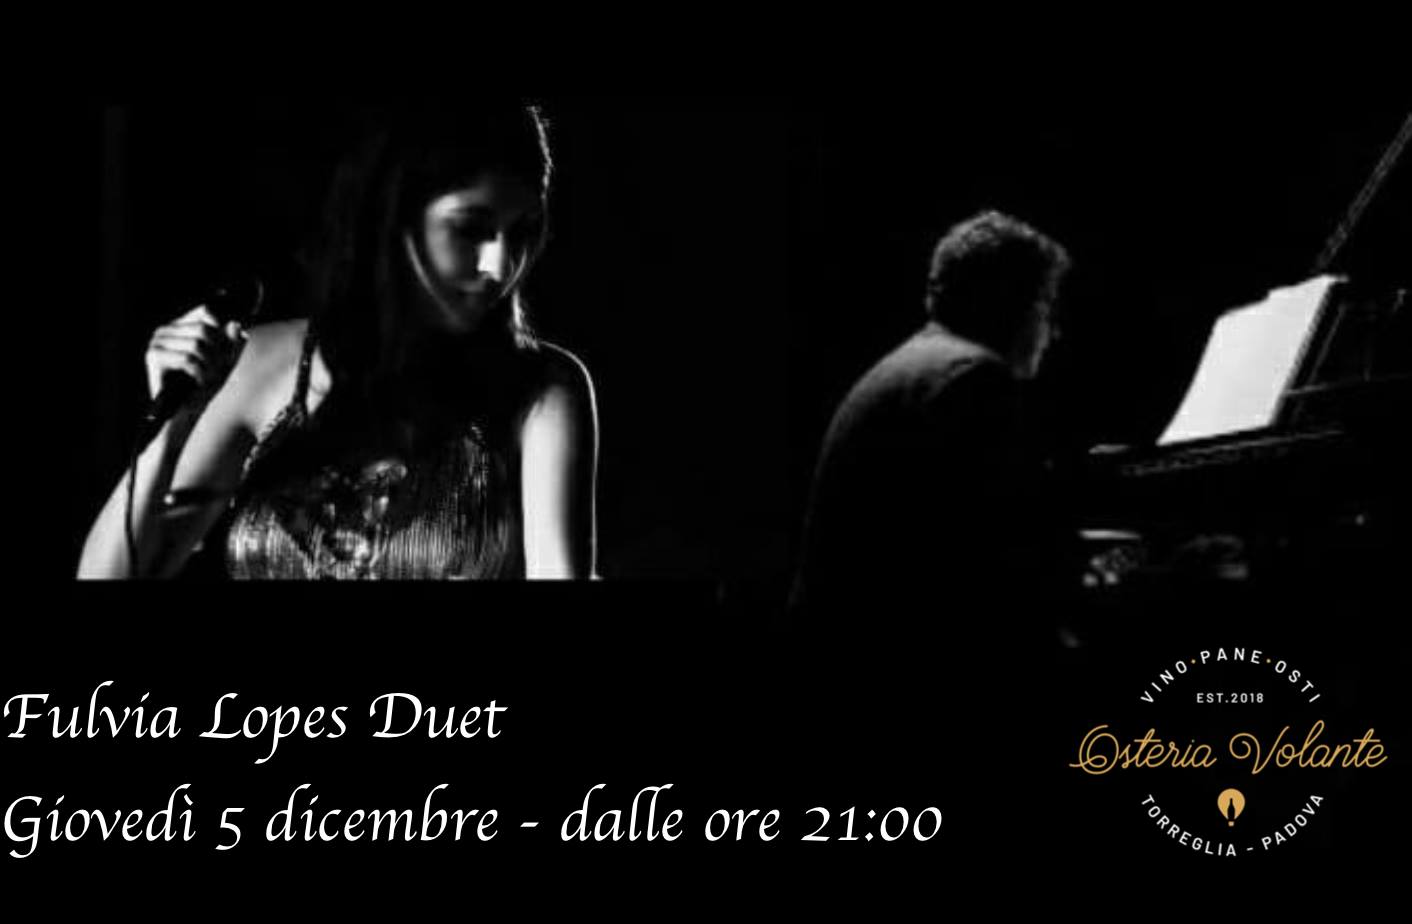 Fulvia Lopes Duet mentre canta accompagnata da un uomo che suona il piano